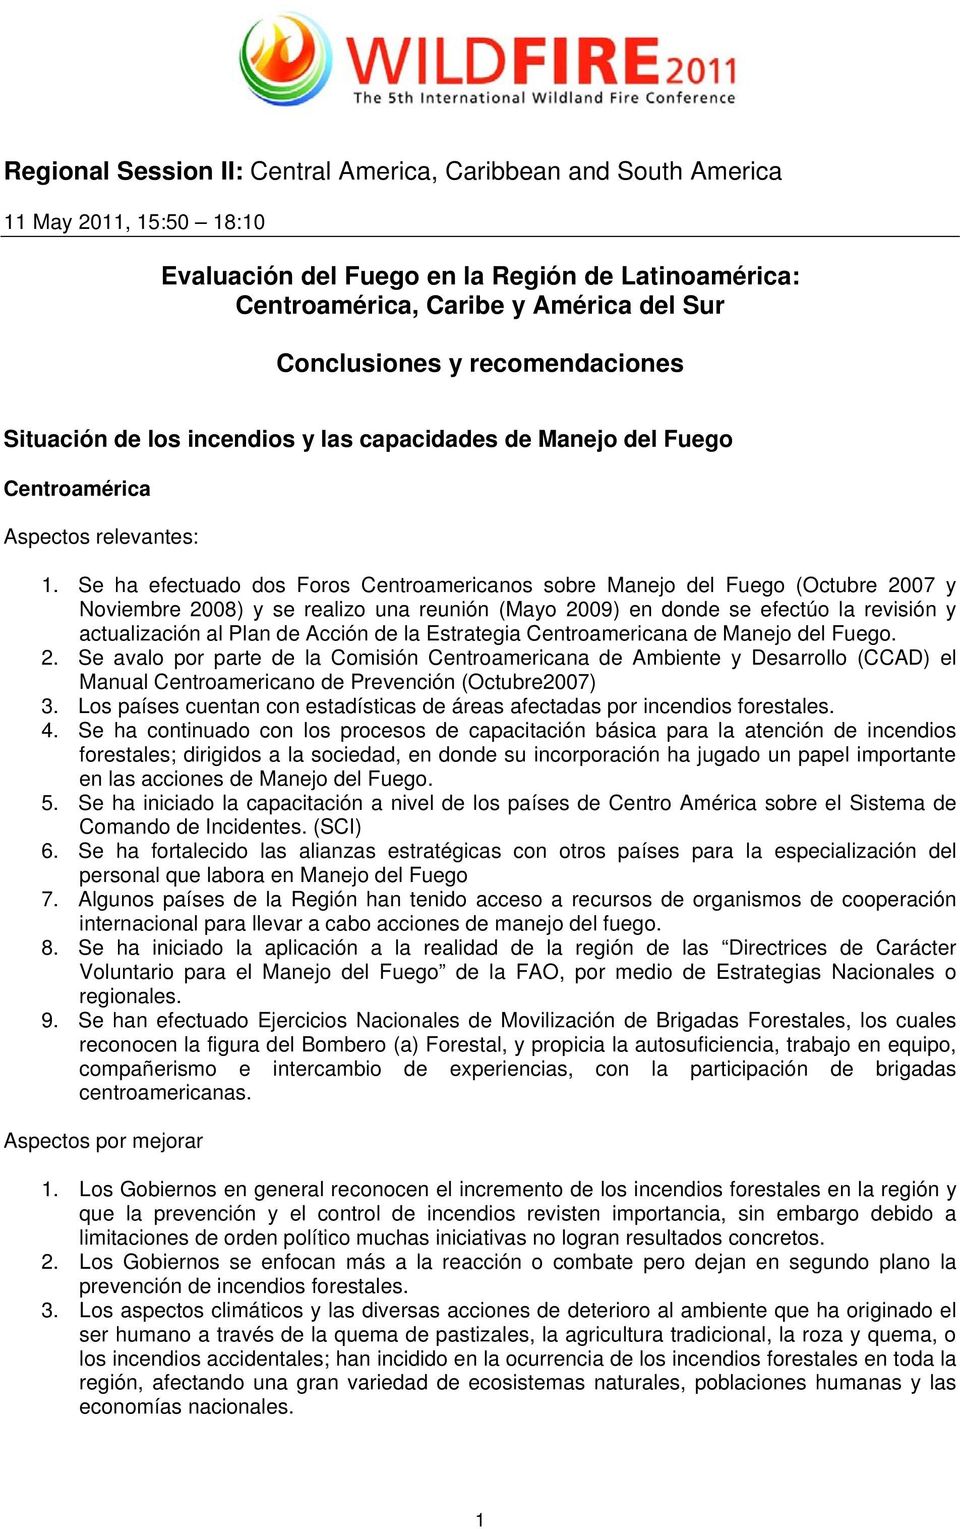 Se ha efectuado dos Foros Centroamericanos sobre Manejo del Fuego (Octubre 2007 y Noviembre 2008) y se realizo una reunión (Mayo 2009) en donde se efectúo la revisión y actualización al Plan de